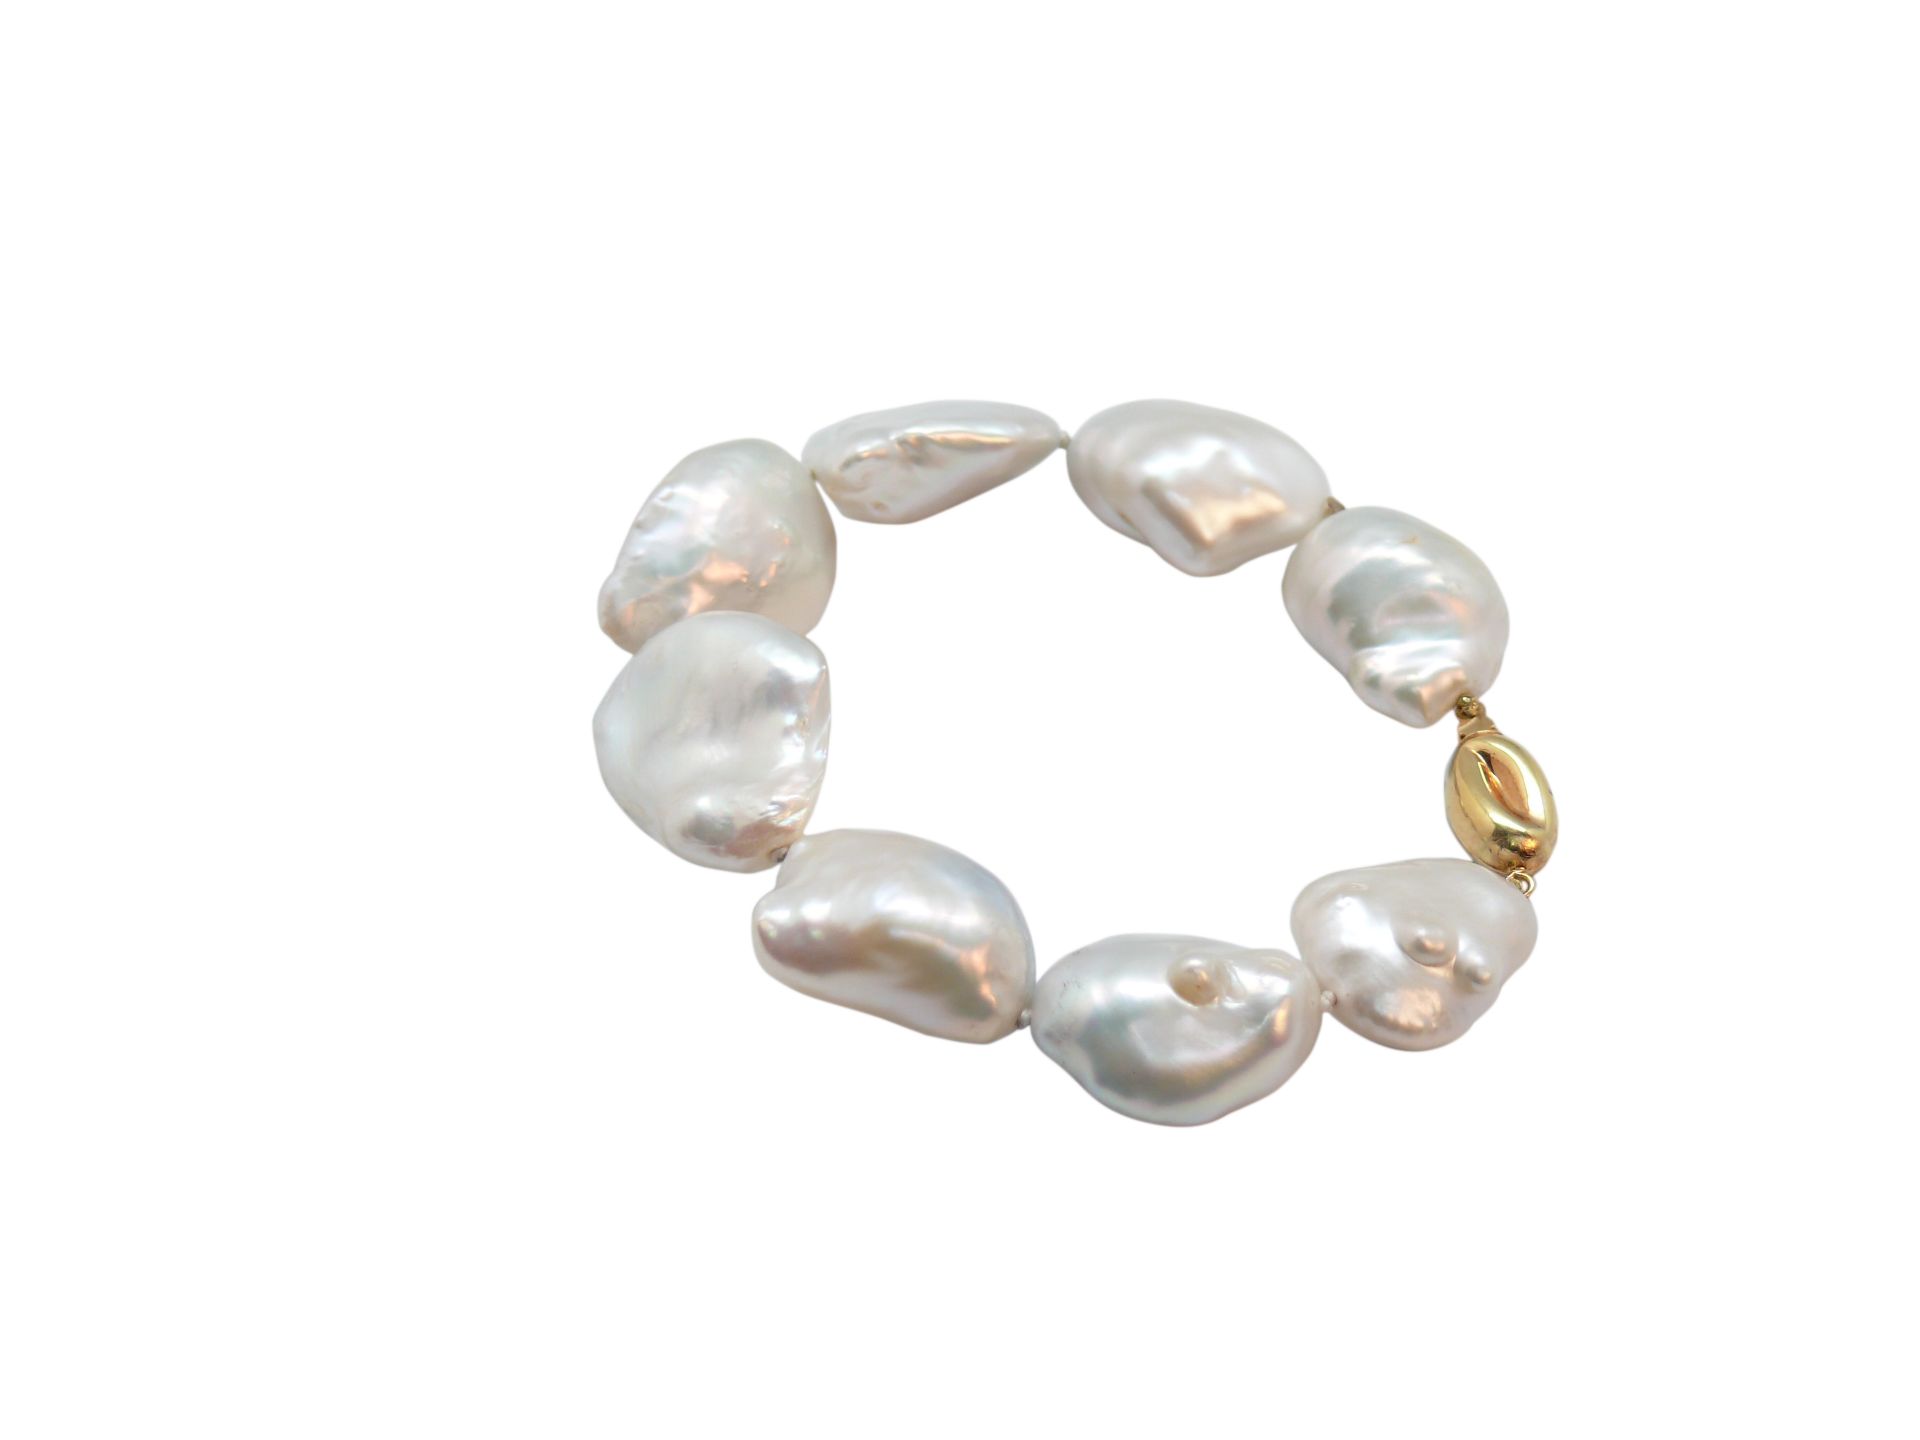 BRACELET De perlas barrocas cultivadas de 16-20 mm. Cierre piñón en oro de 18 kl., 27,5 gr. Starting